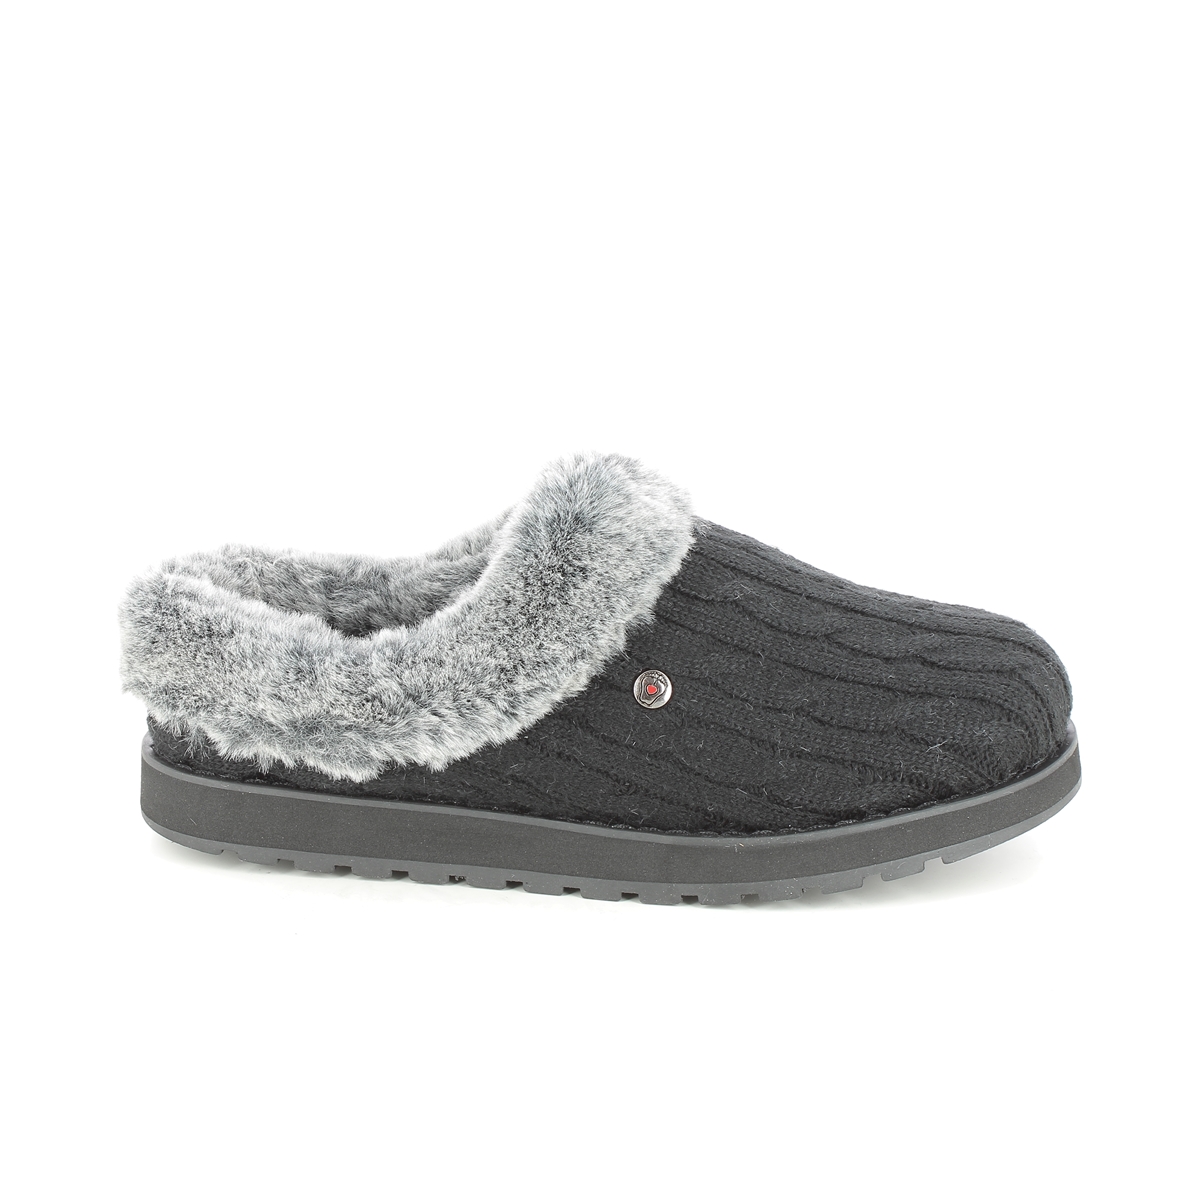 Skechers Keepsakes BLK Black slippers